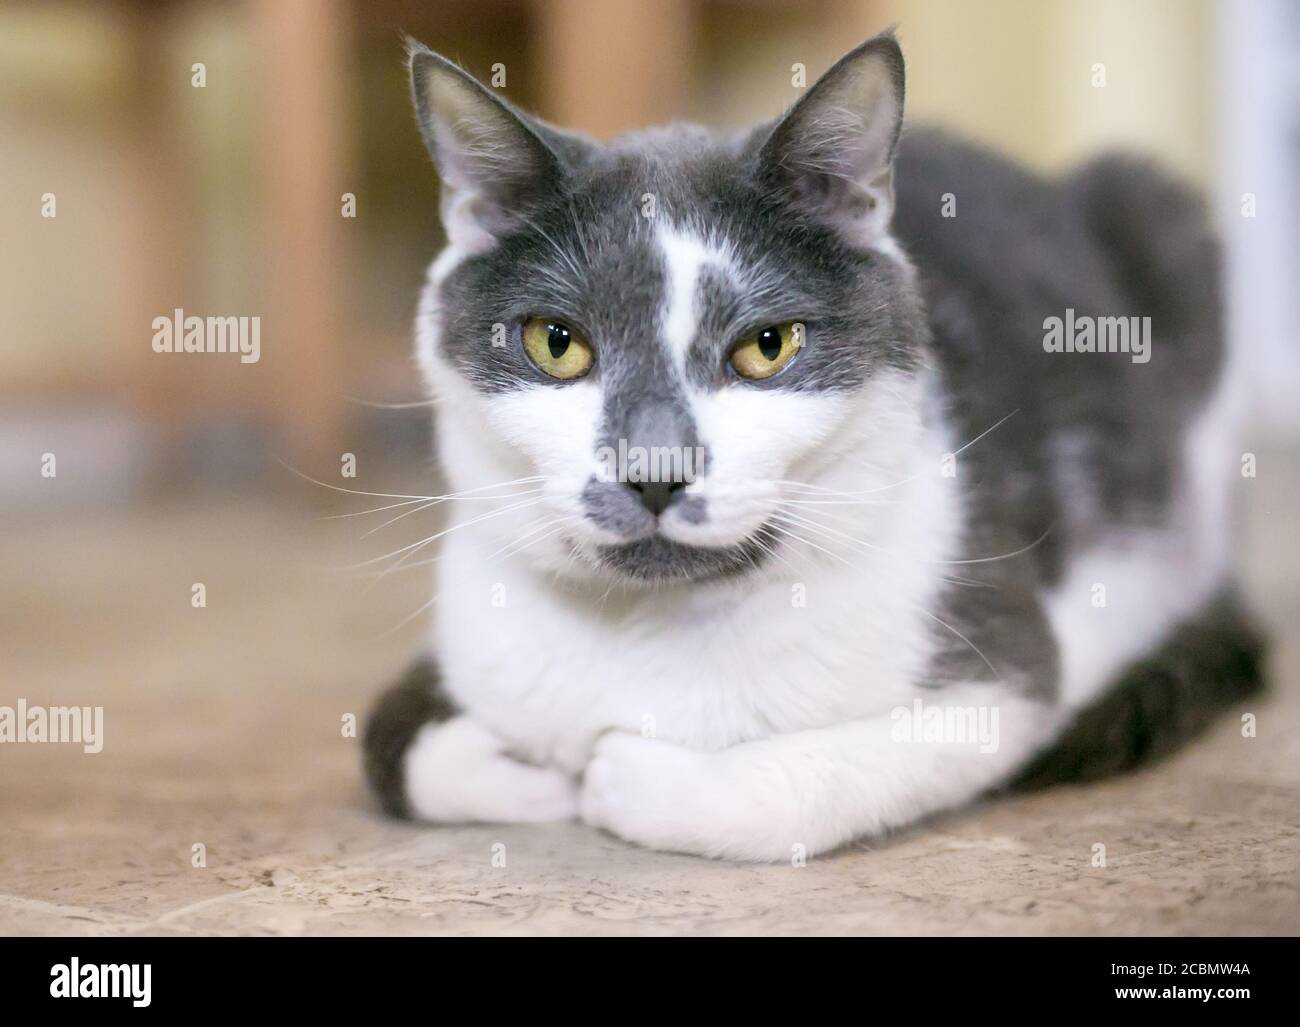 Un gatto di shorthair grigio e bianco seduto in una pagnotta posizione' con le zampe riposto sotto il corpo Foto Stock